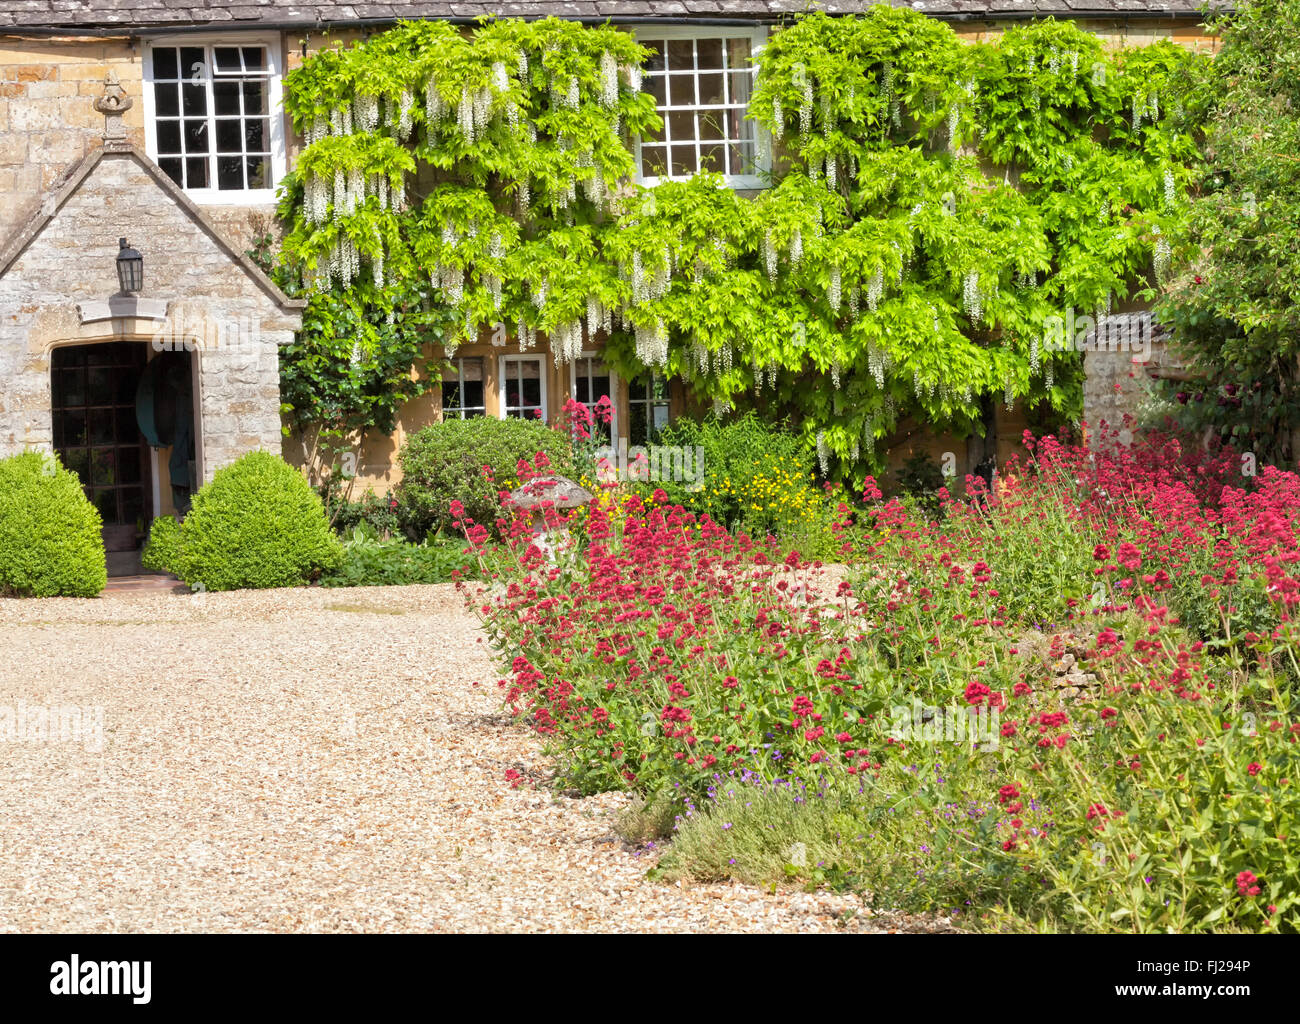 Inglese tradizionale cortile cottage con stradina di ghiaia, pietra fungo colorato giardino di fiori. Foto Stock